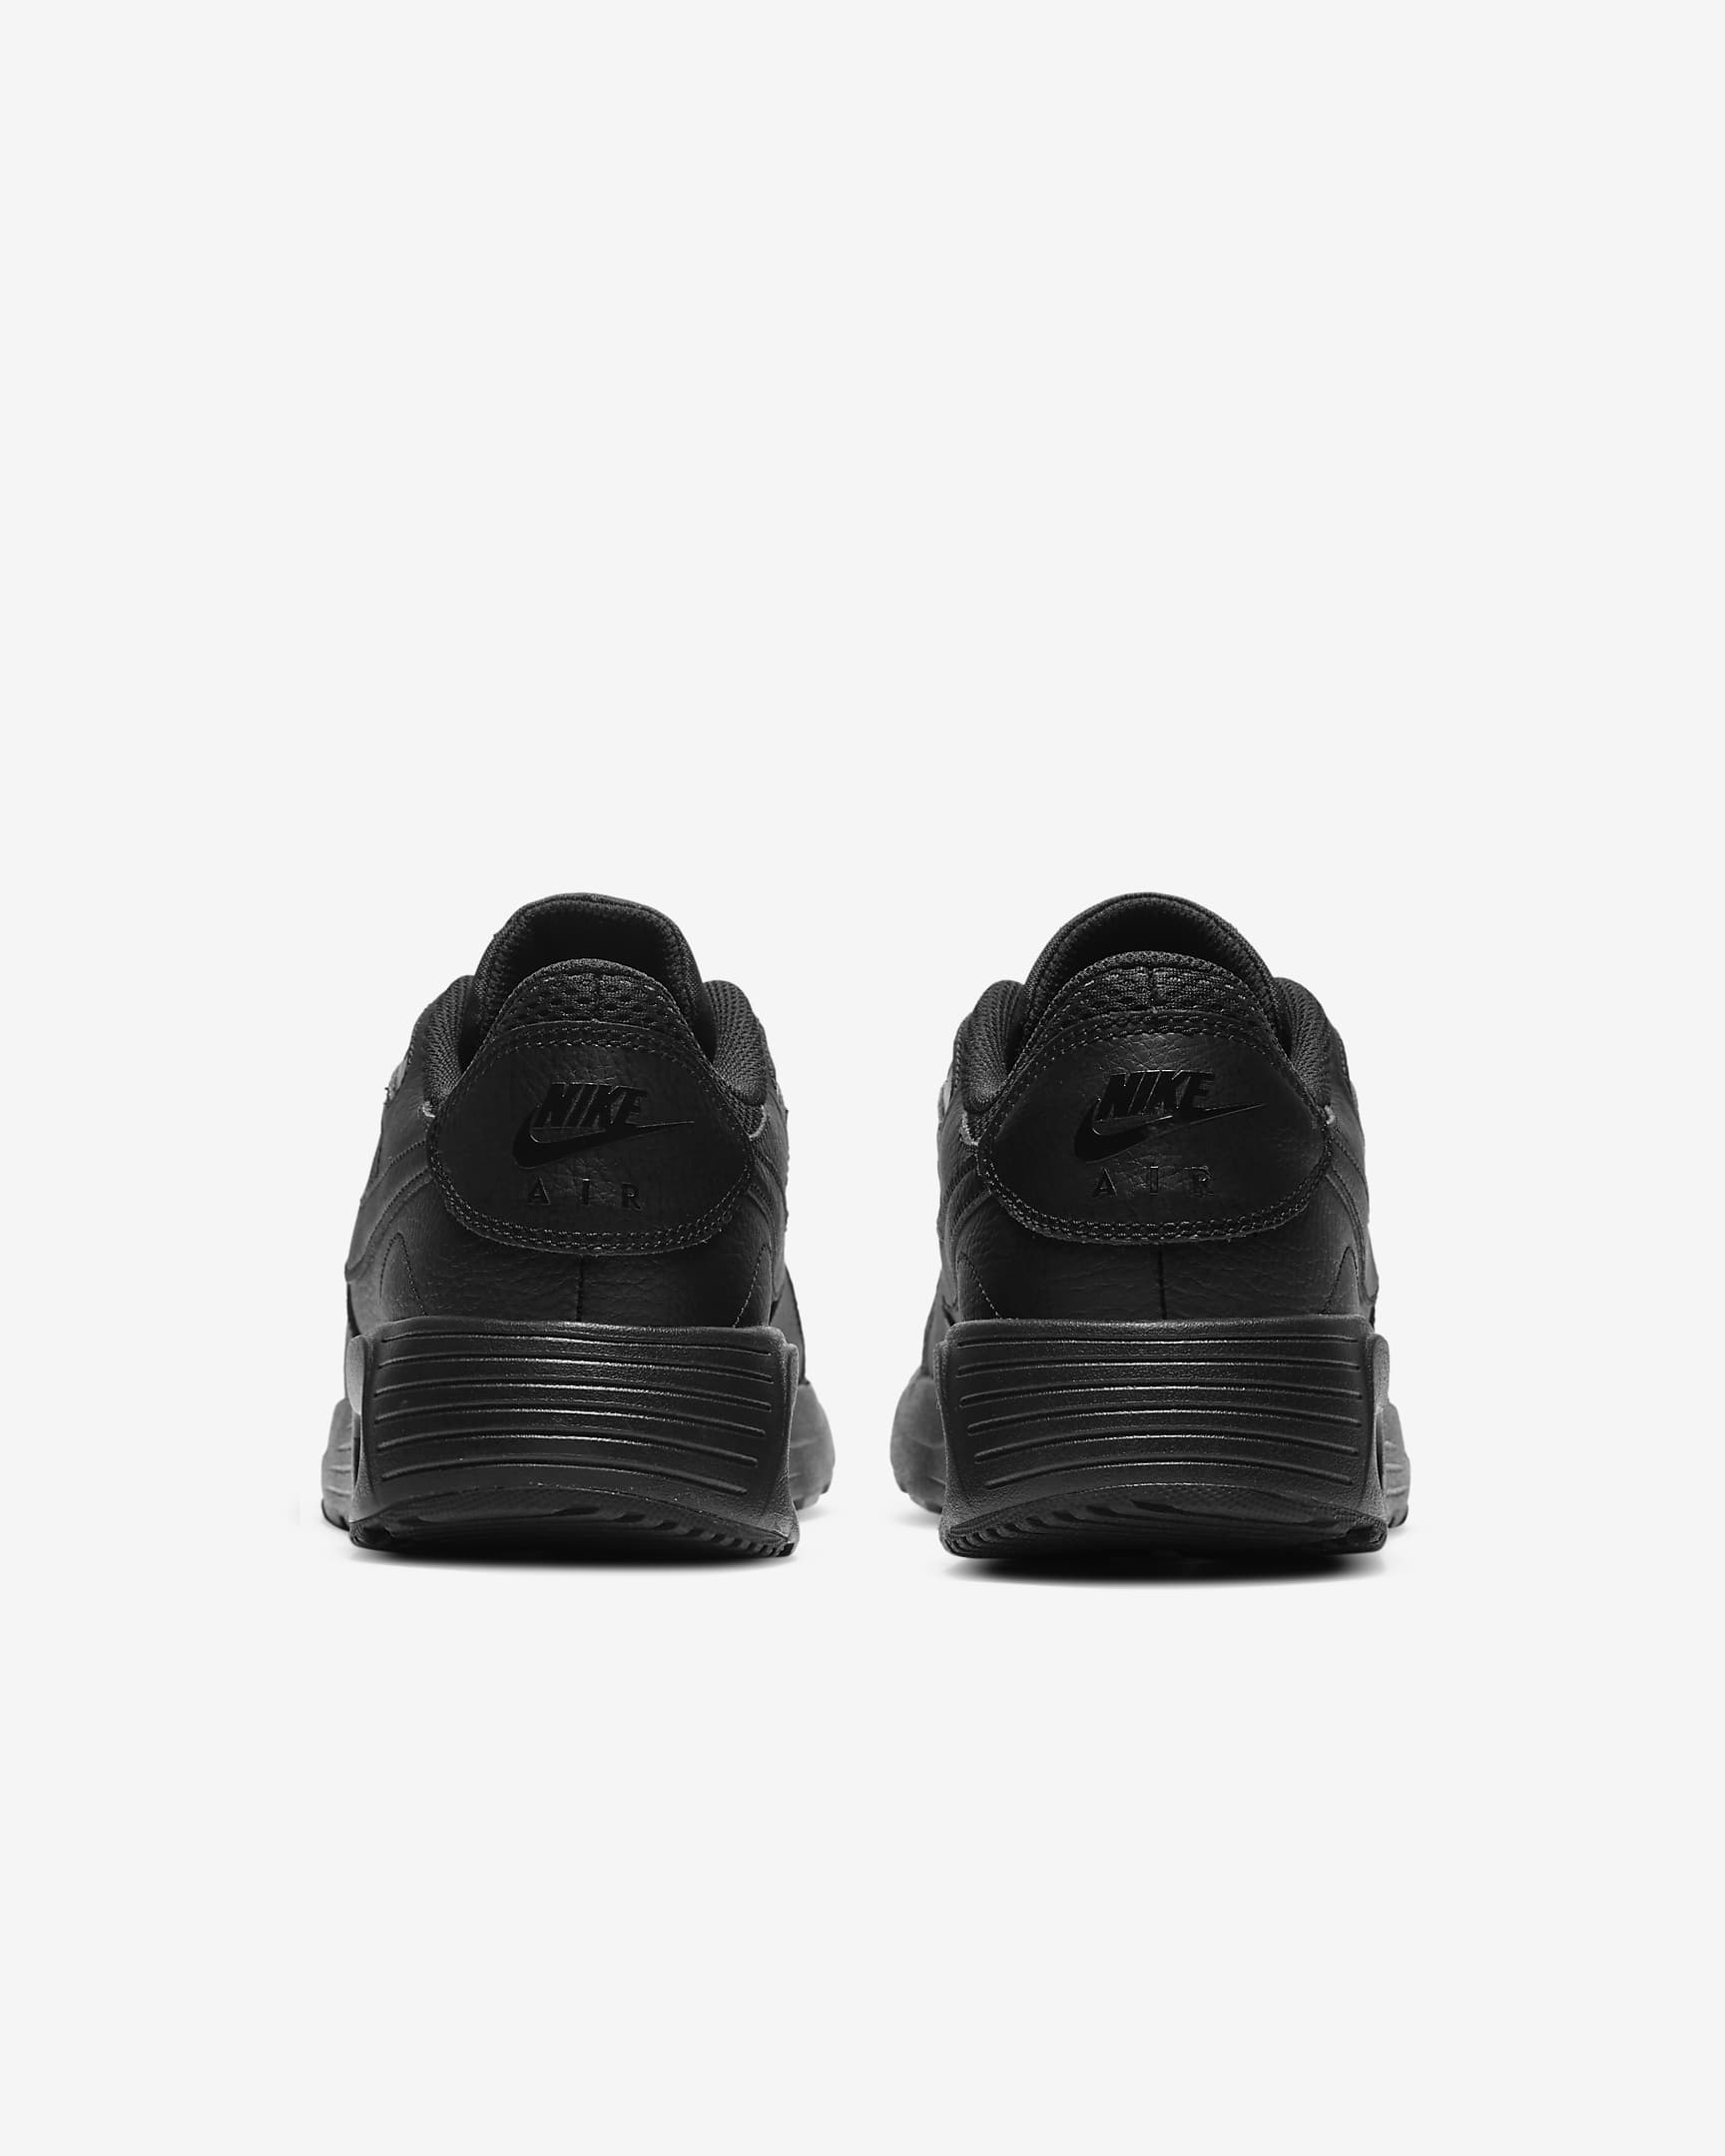 Nike Air Max SC Men's Shoes - Black/Black/Black